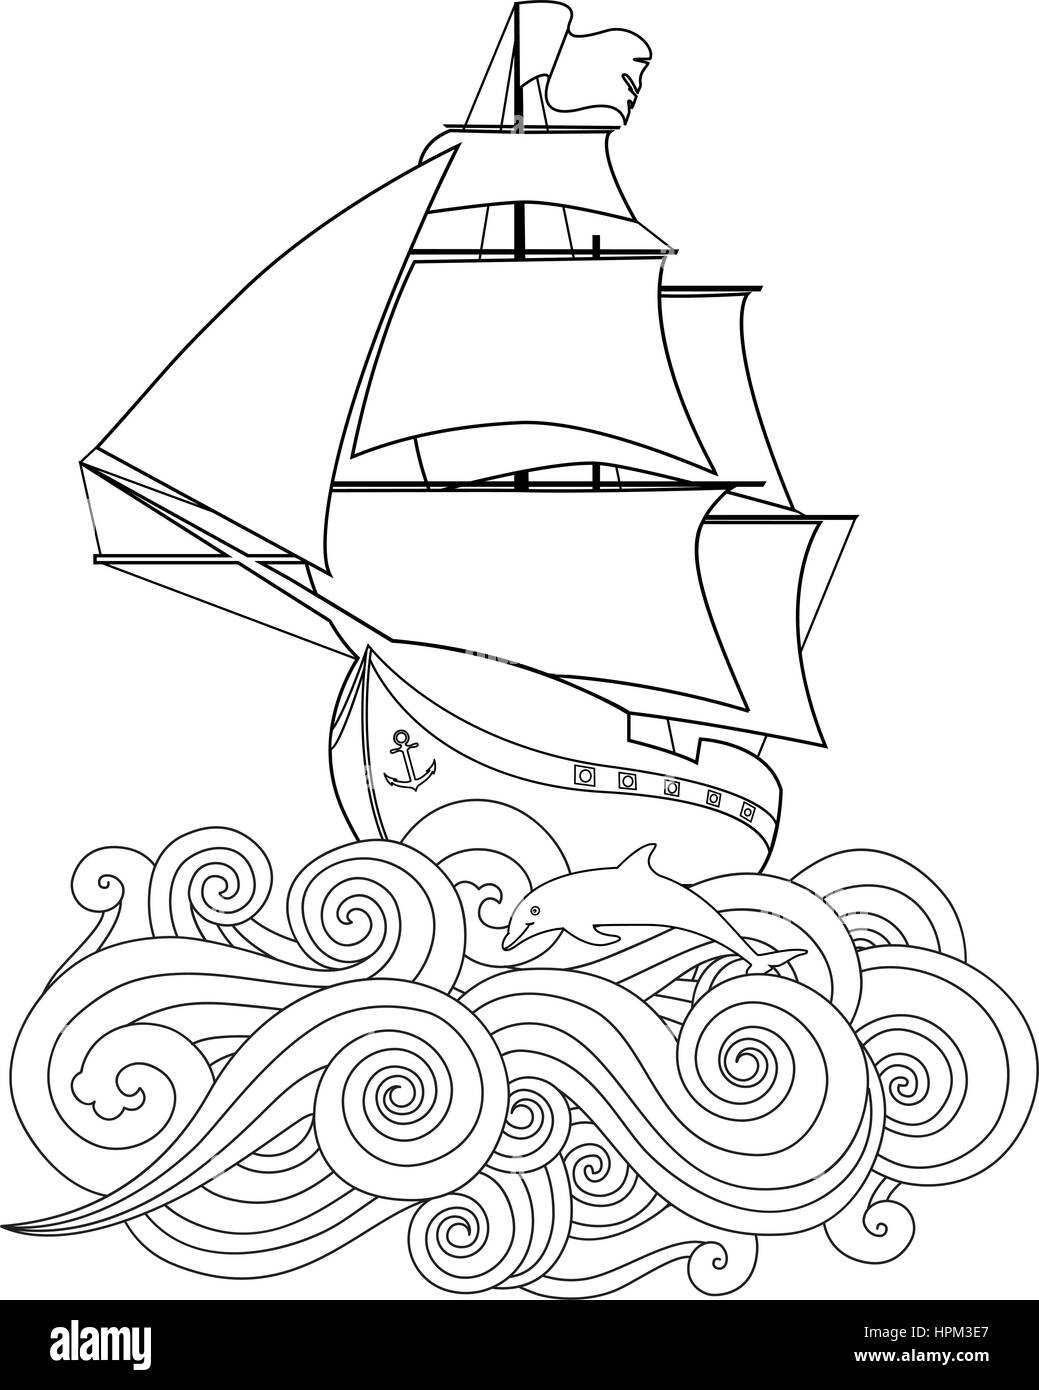 Immagine di contorno della nave in onda in zentangle ispirata doodle style isolato su bianco. Composizione verticale. Illustrazione Vettoriale